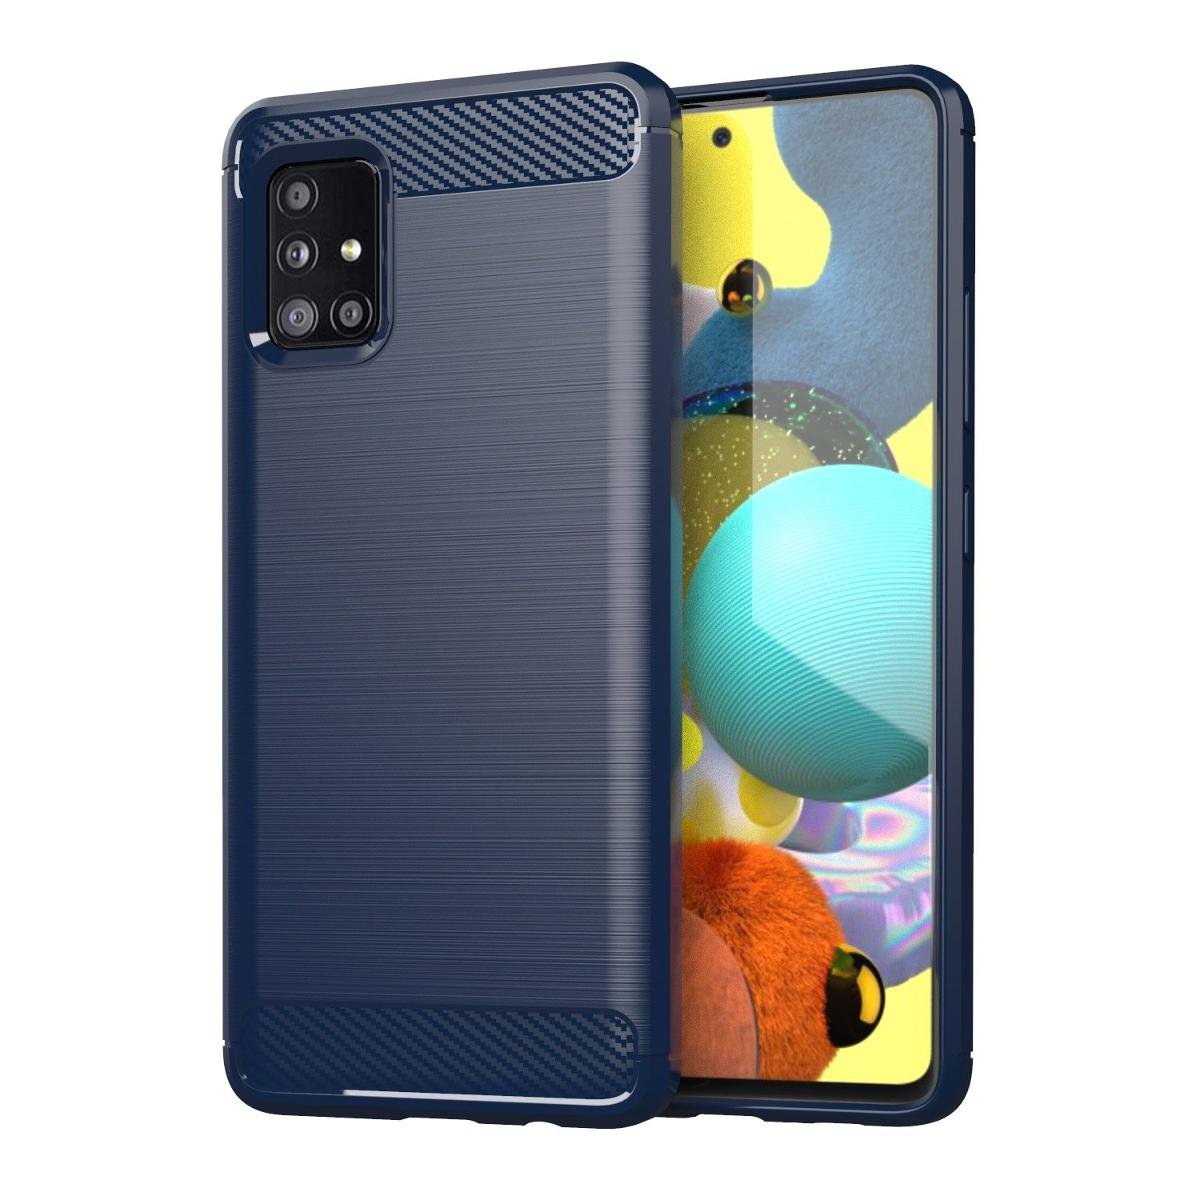 Samsung Hurtel Carbon Case elastyczne etui pokrowiec Galaxy A51 5G niebieski - Niebieski